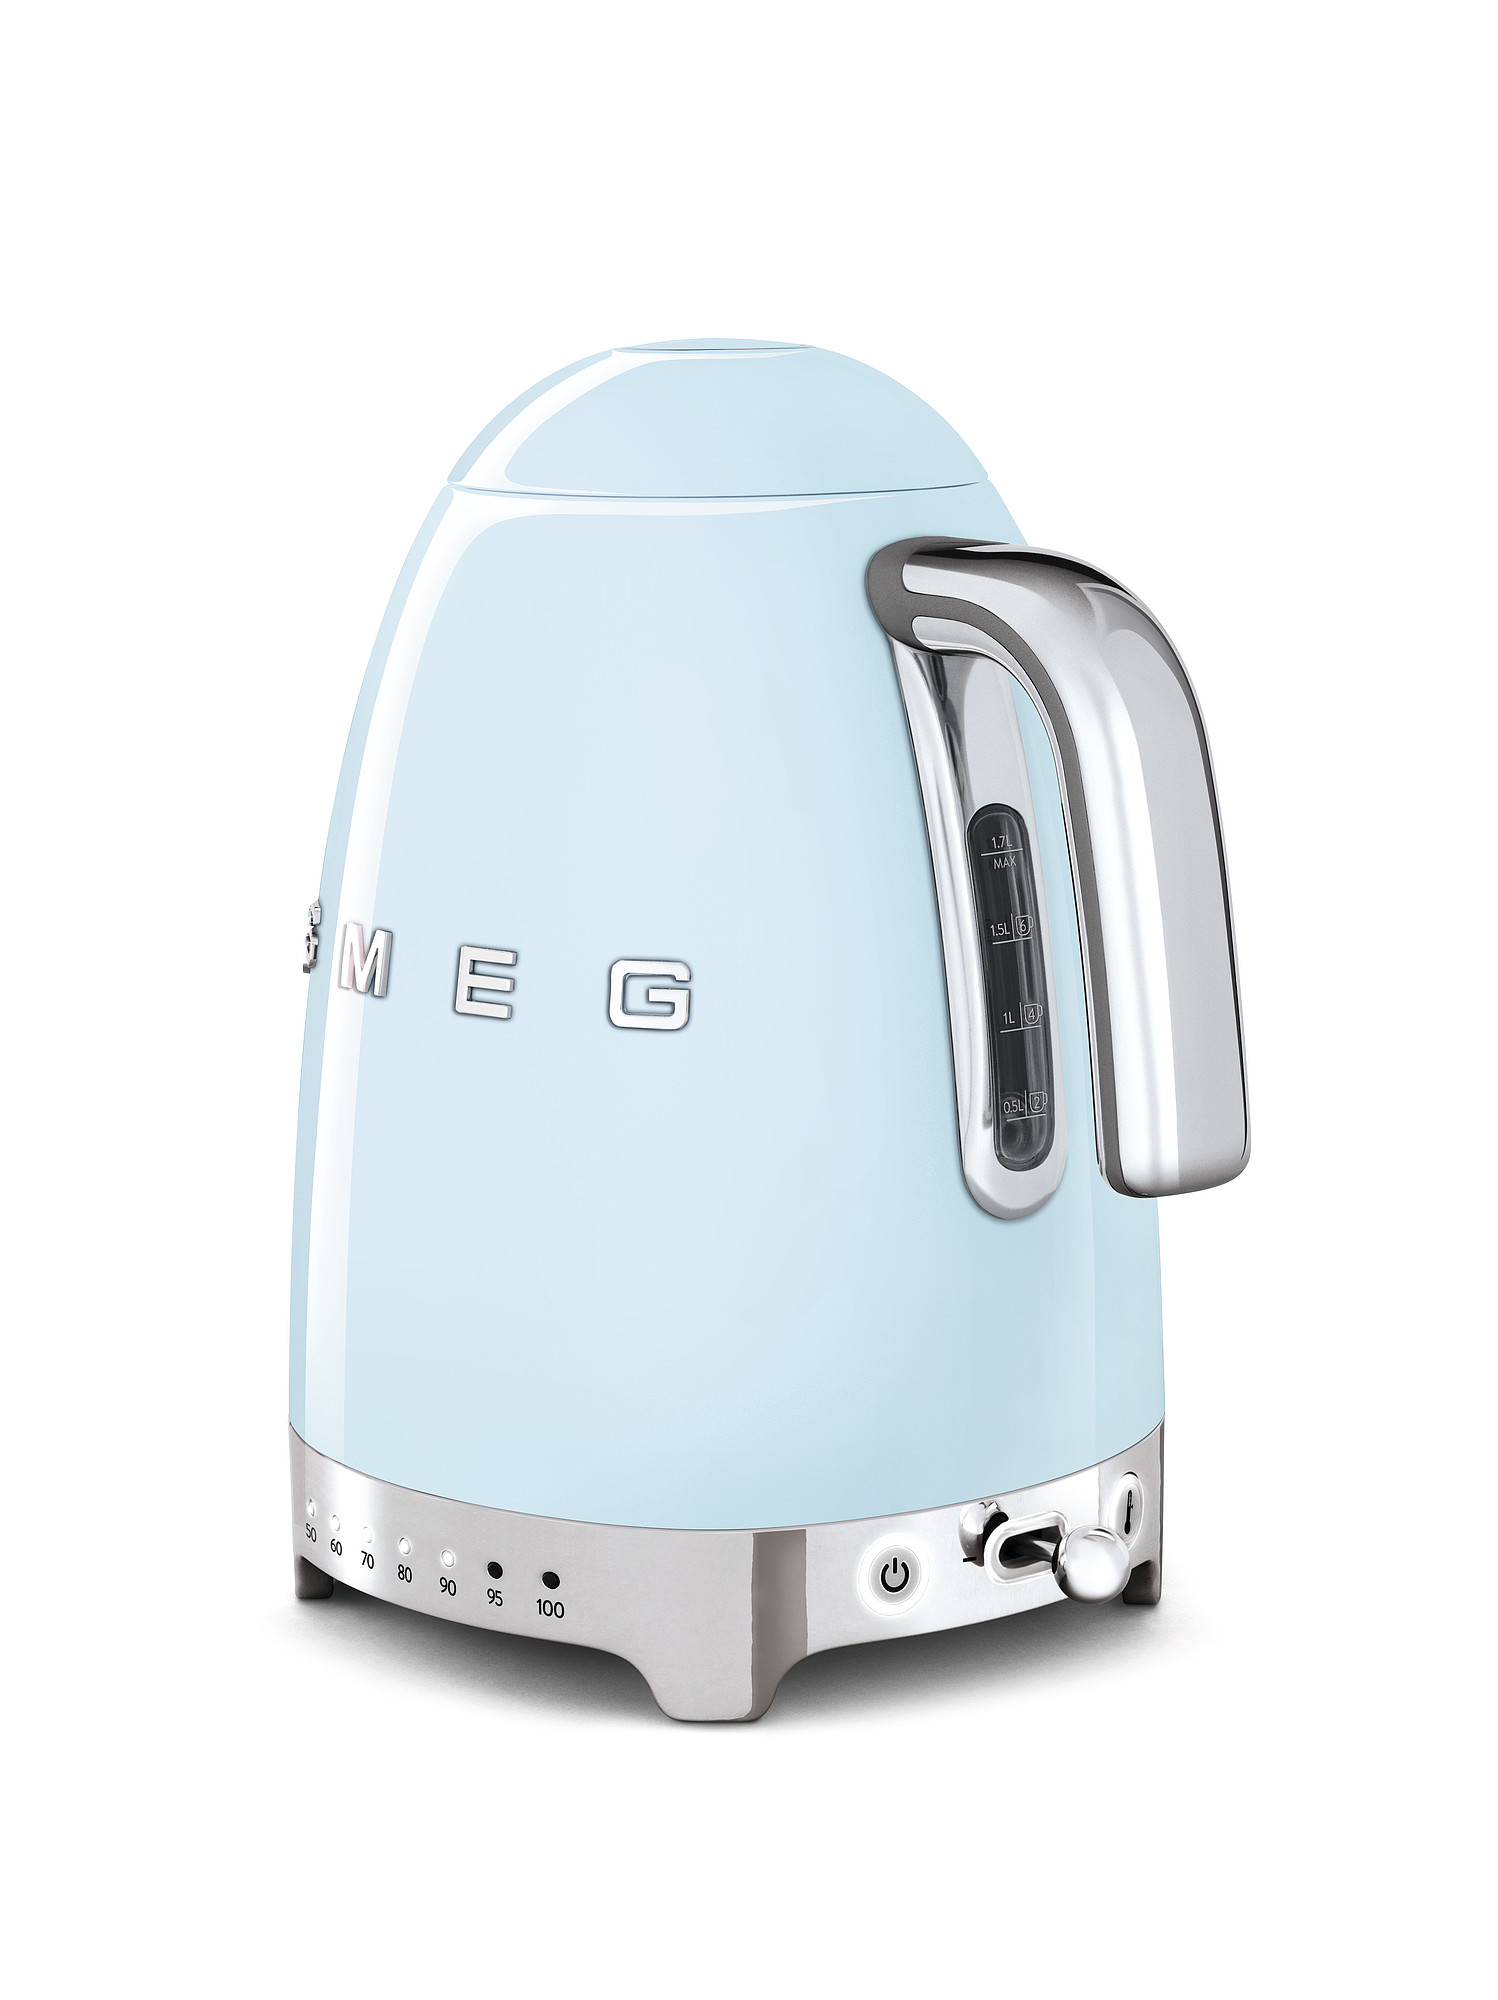 SMEG Wasserkocher  mit Temperaturregelung - Toaster Set Pastellblau